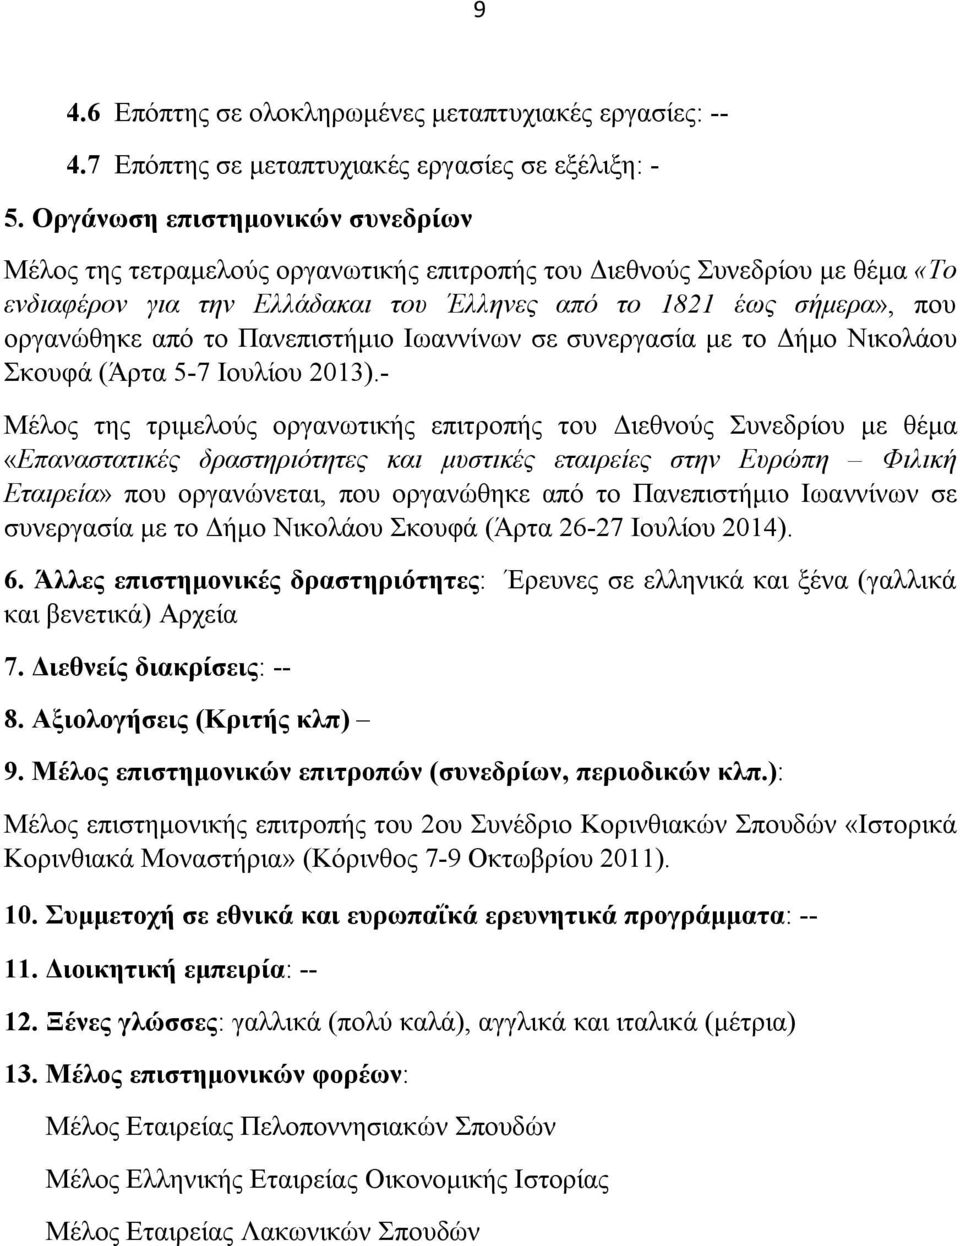 Πανεπιστήμιο Ιωαννίνων σε συνεργασία με το Δήμο Νικολάου Σκουφά (Άρτα 5-7 Ιουλίου 2013).